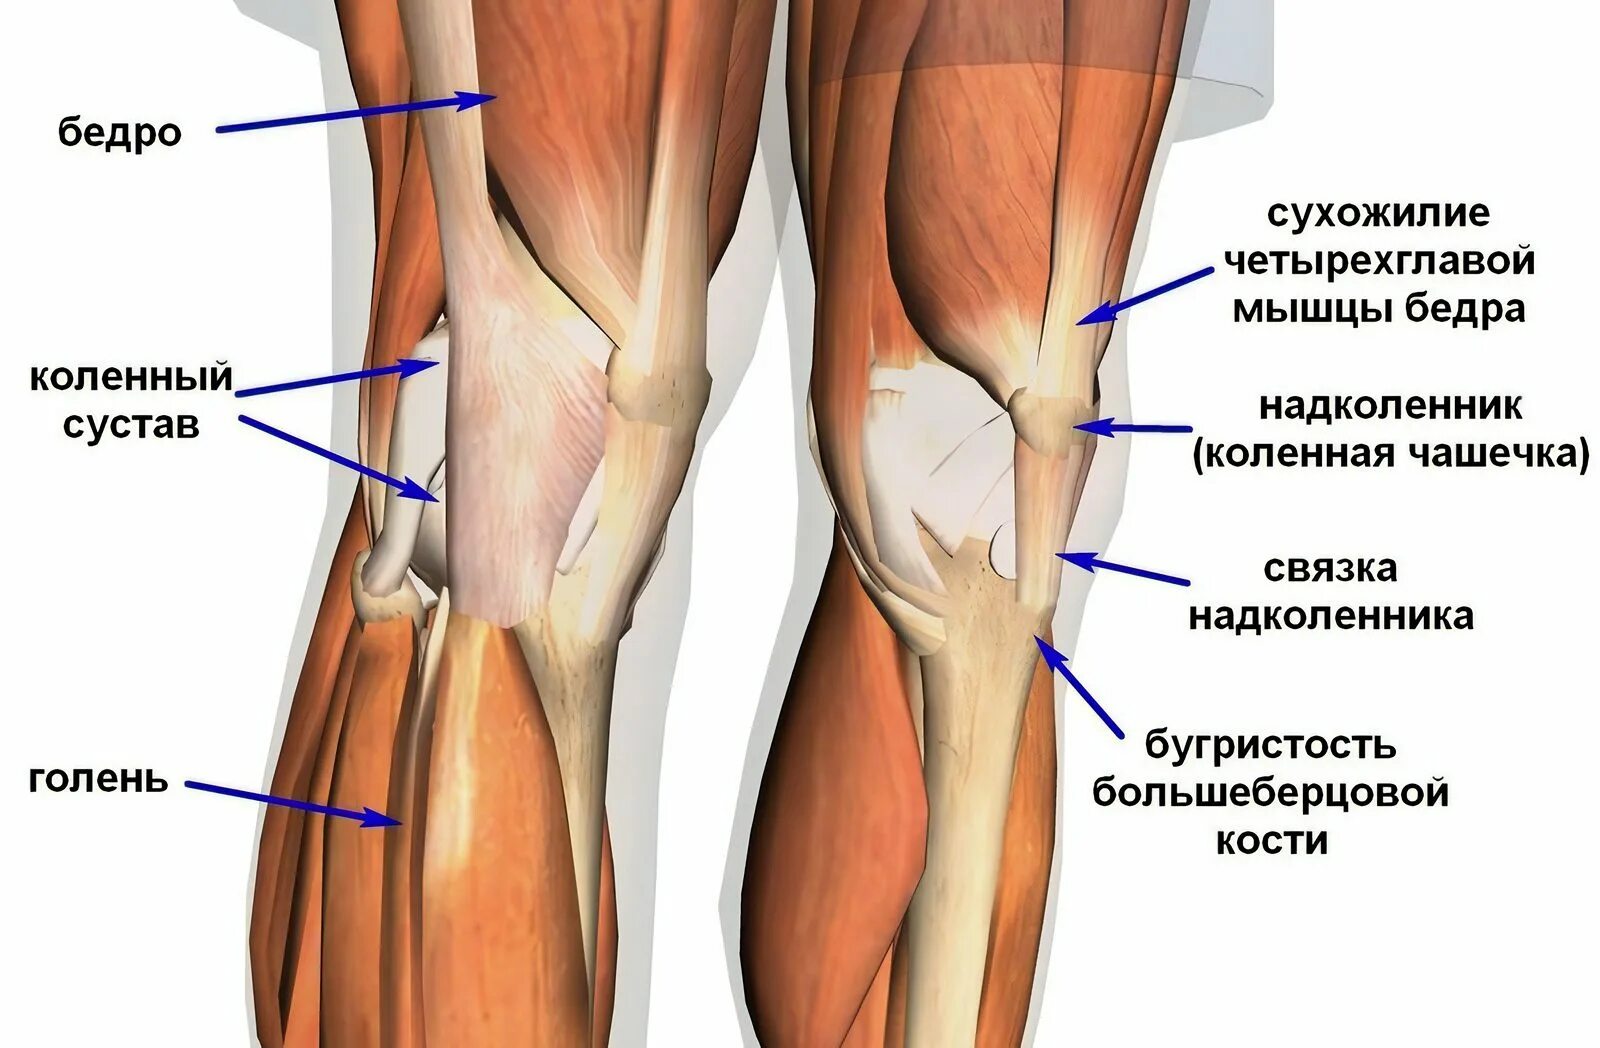 Связка называться. Коленный сустав связки и сухожилия анатомия. Строение коленного сустава связки и мышцы и сухожилия. Мышцы и связки коленного сустава анатомия. Мышцы коленного сустава анатомия.